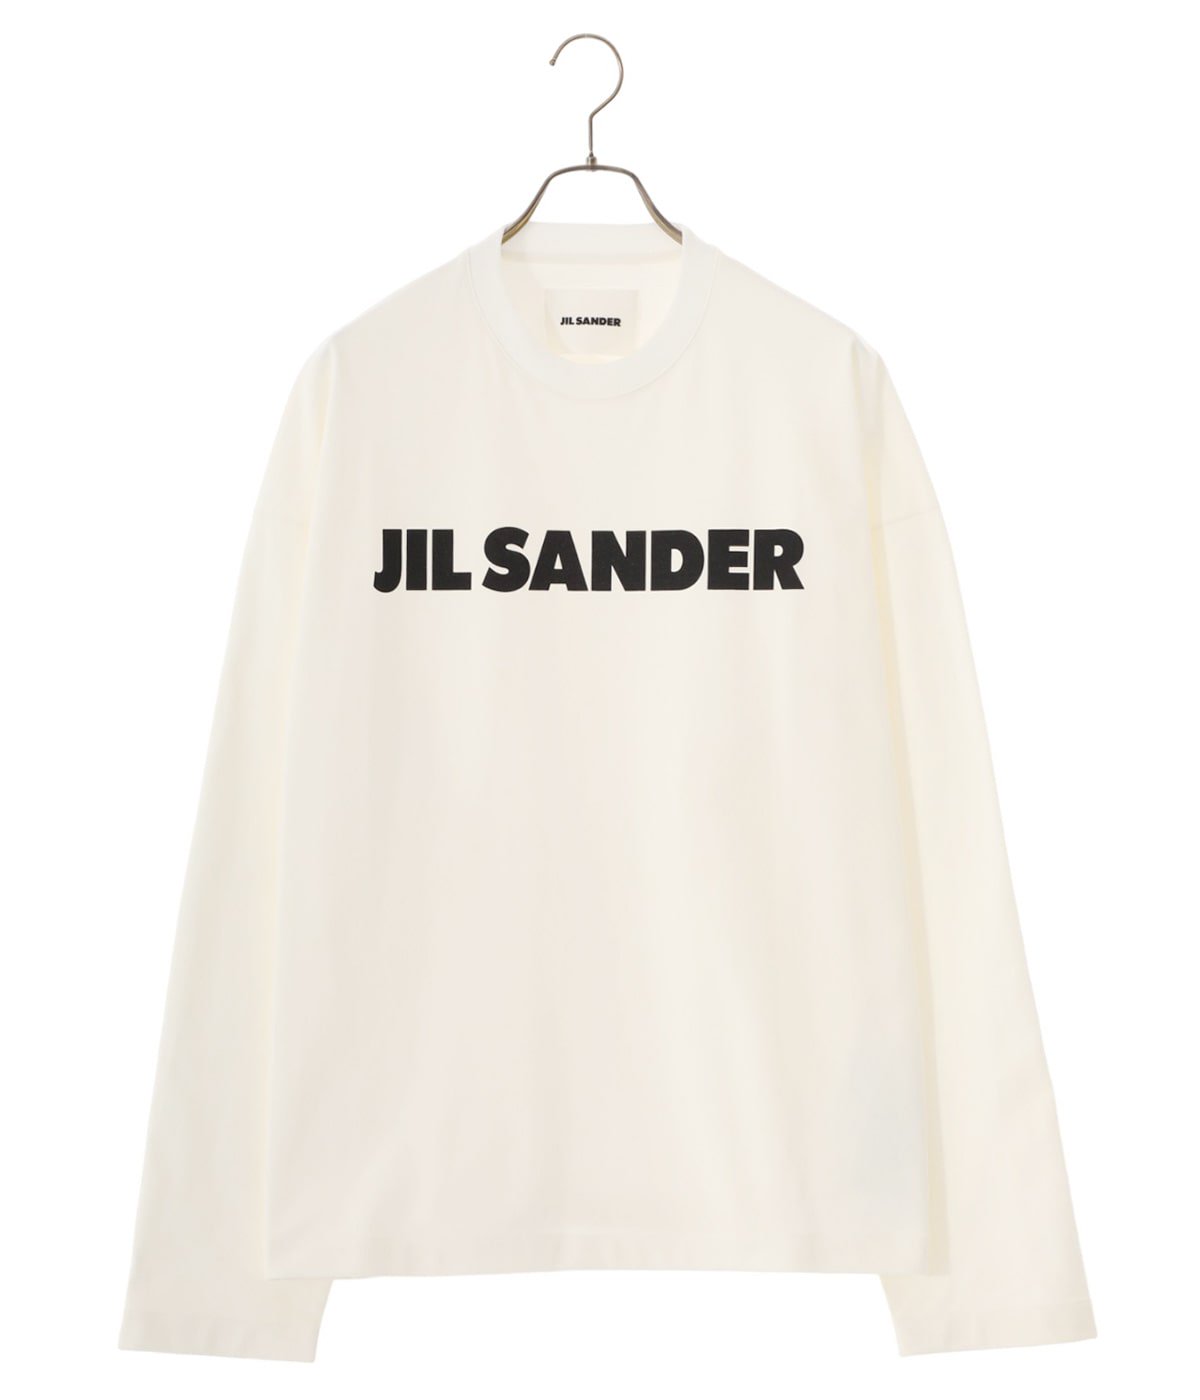 JIL SANDER　ロゴ プリント ロングTシャツ ホワイト Sサイズ